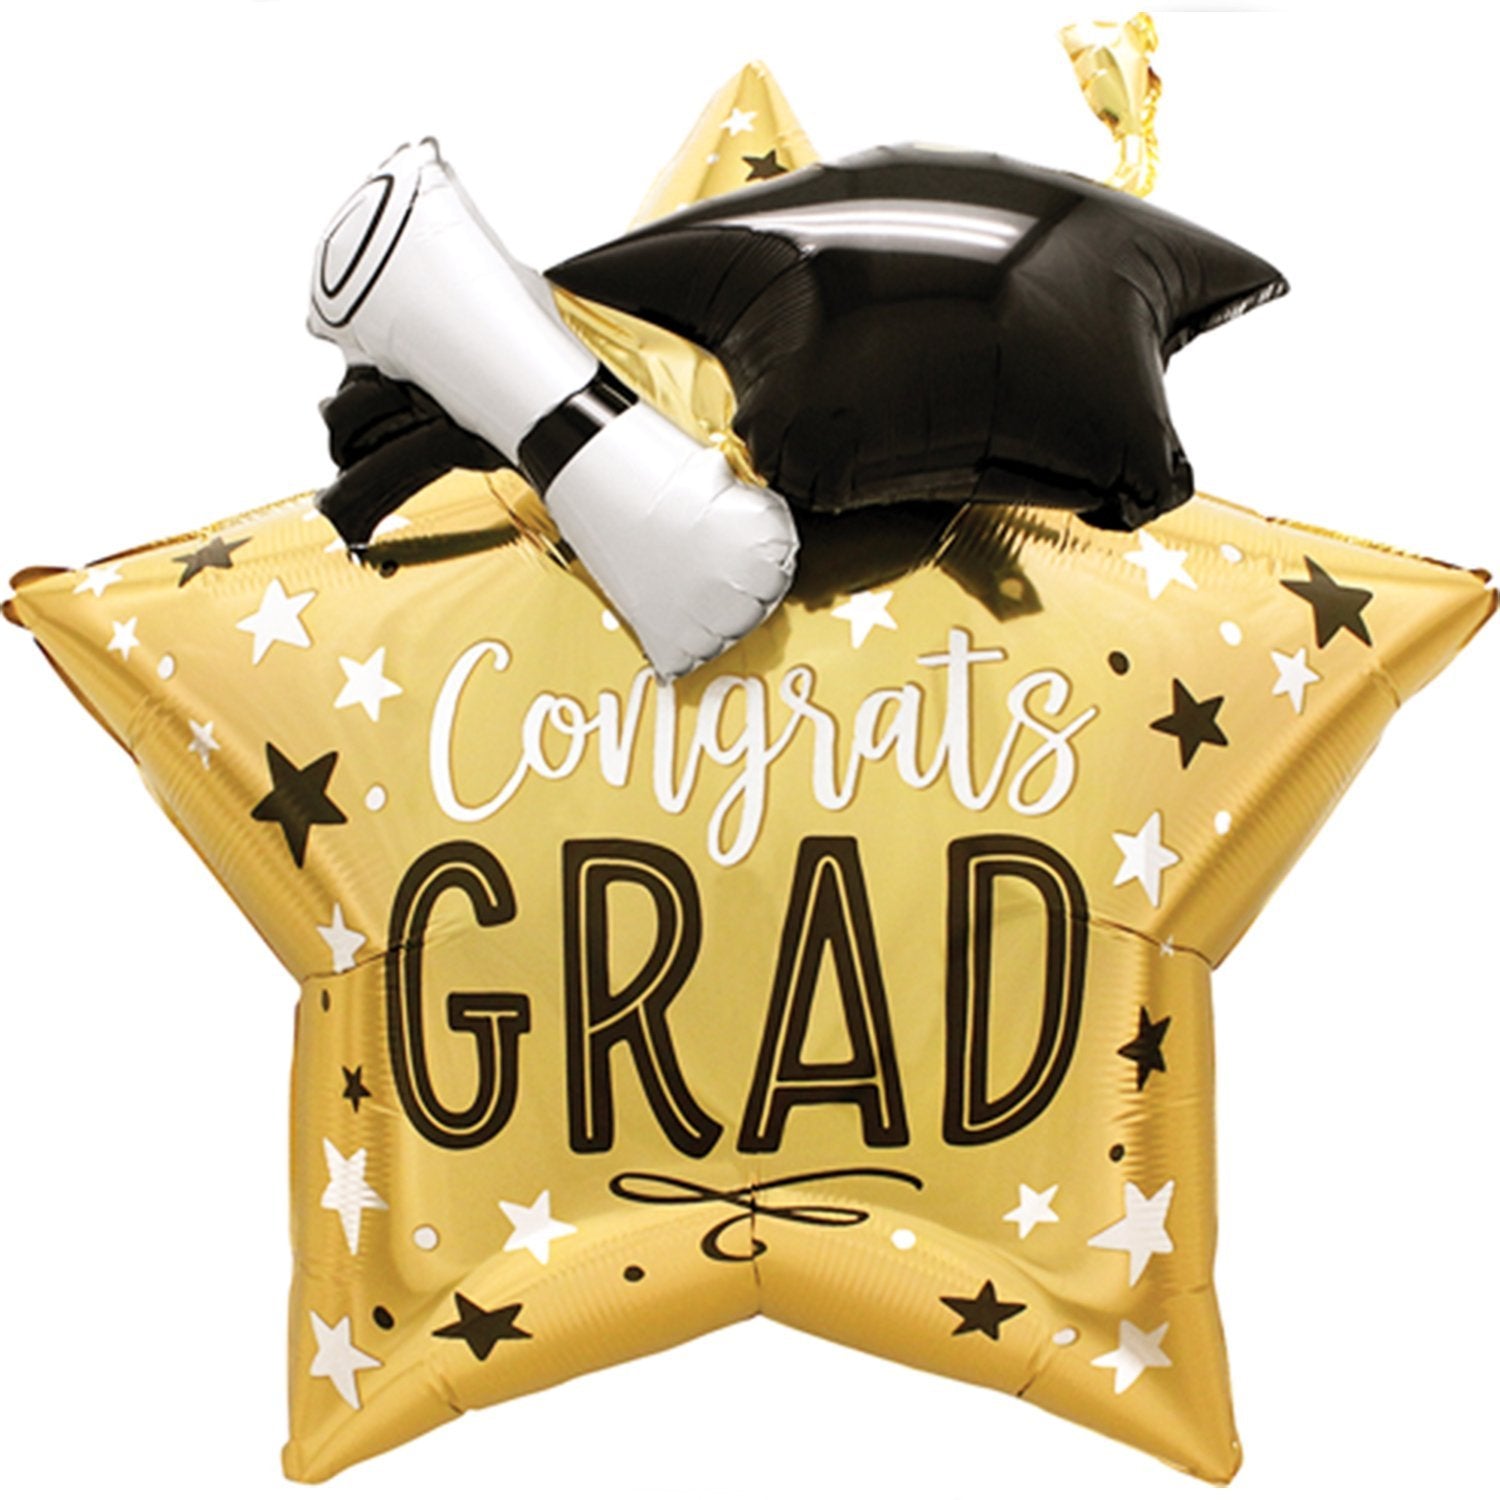 Congrats Grad Star Balloon - Pretty Collected